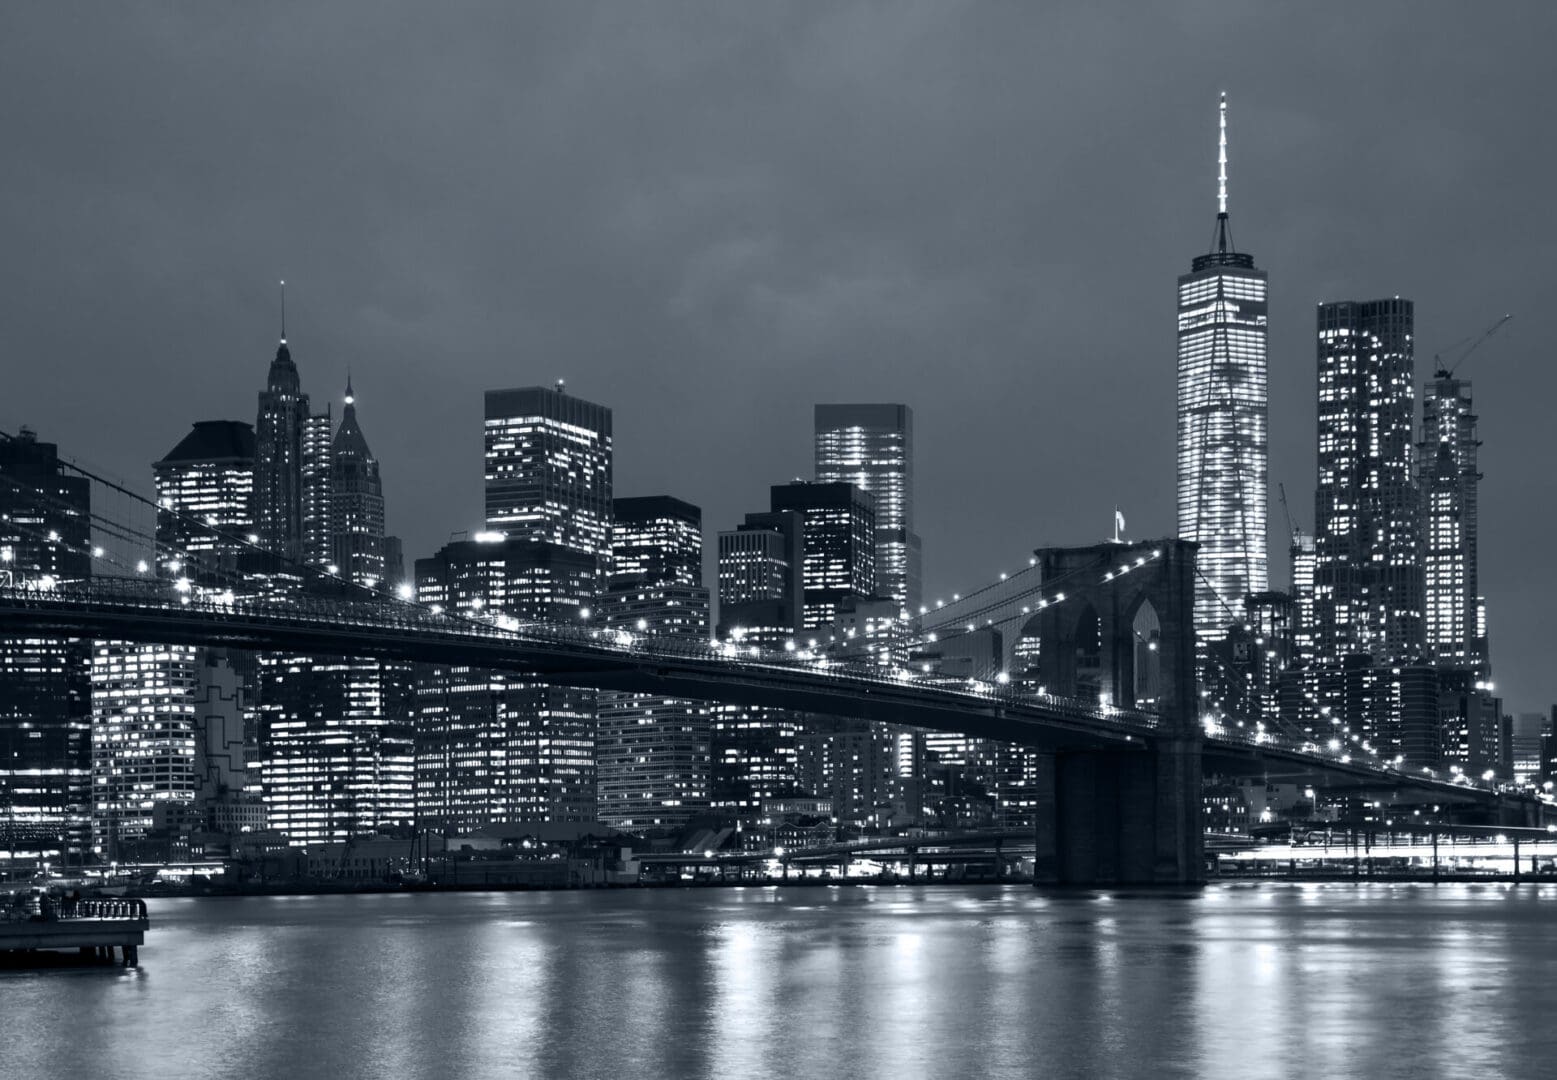 Panorama Shot of New York City at Night